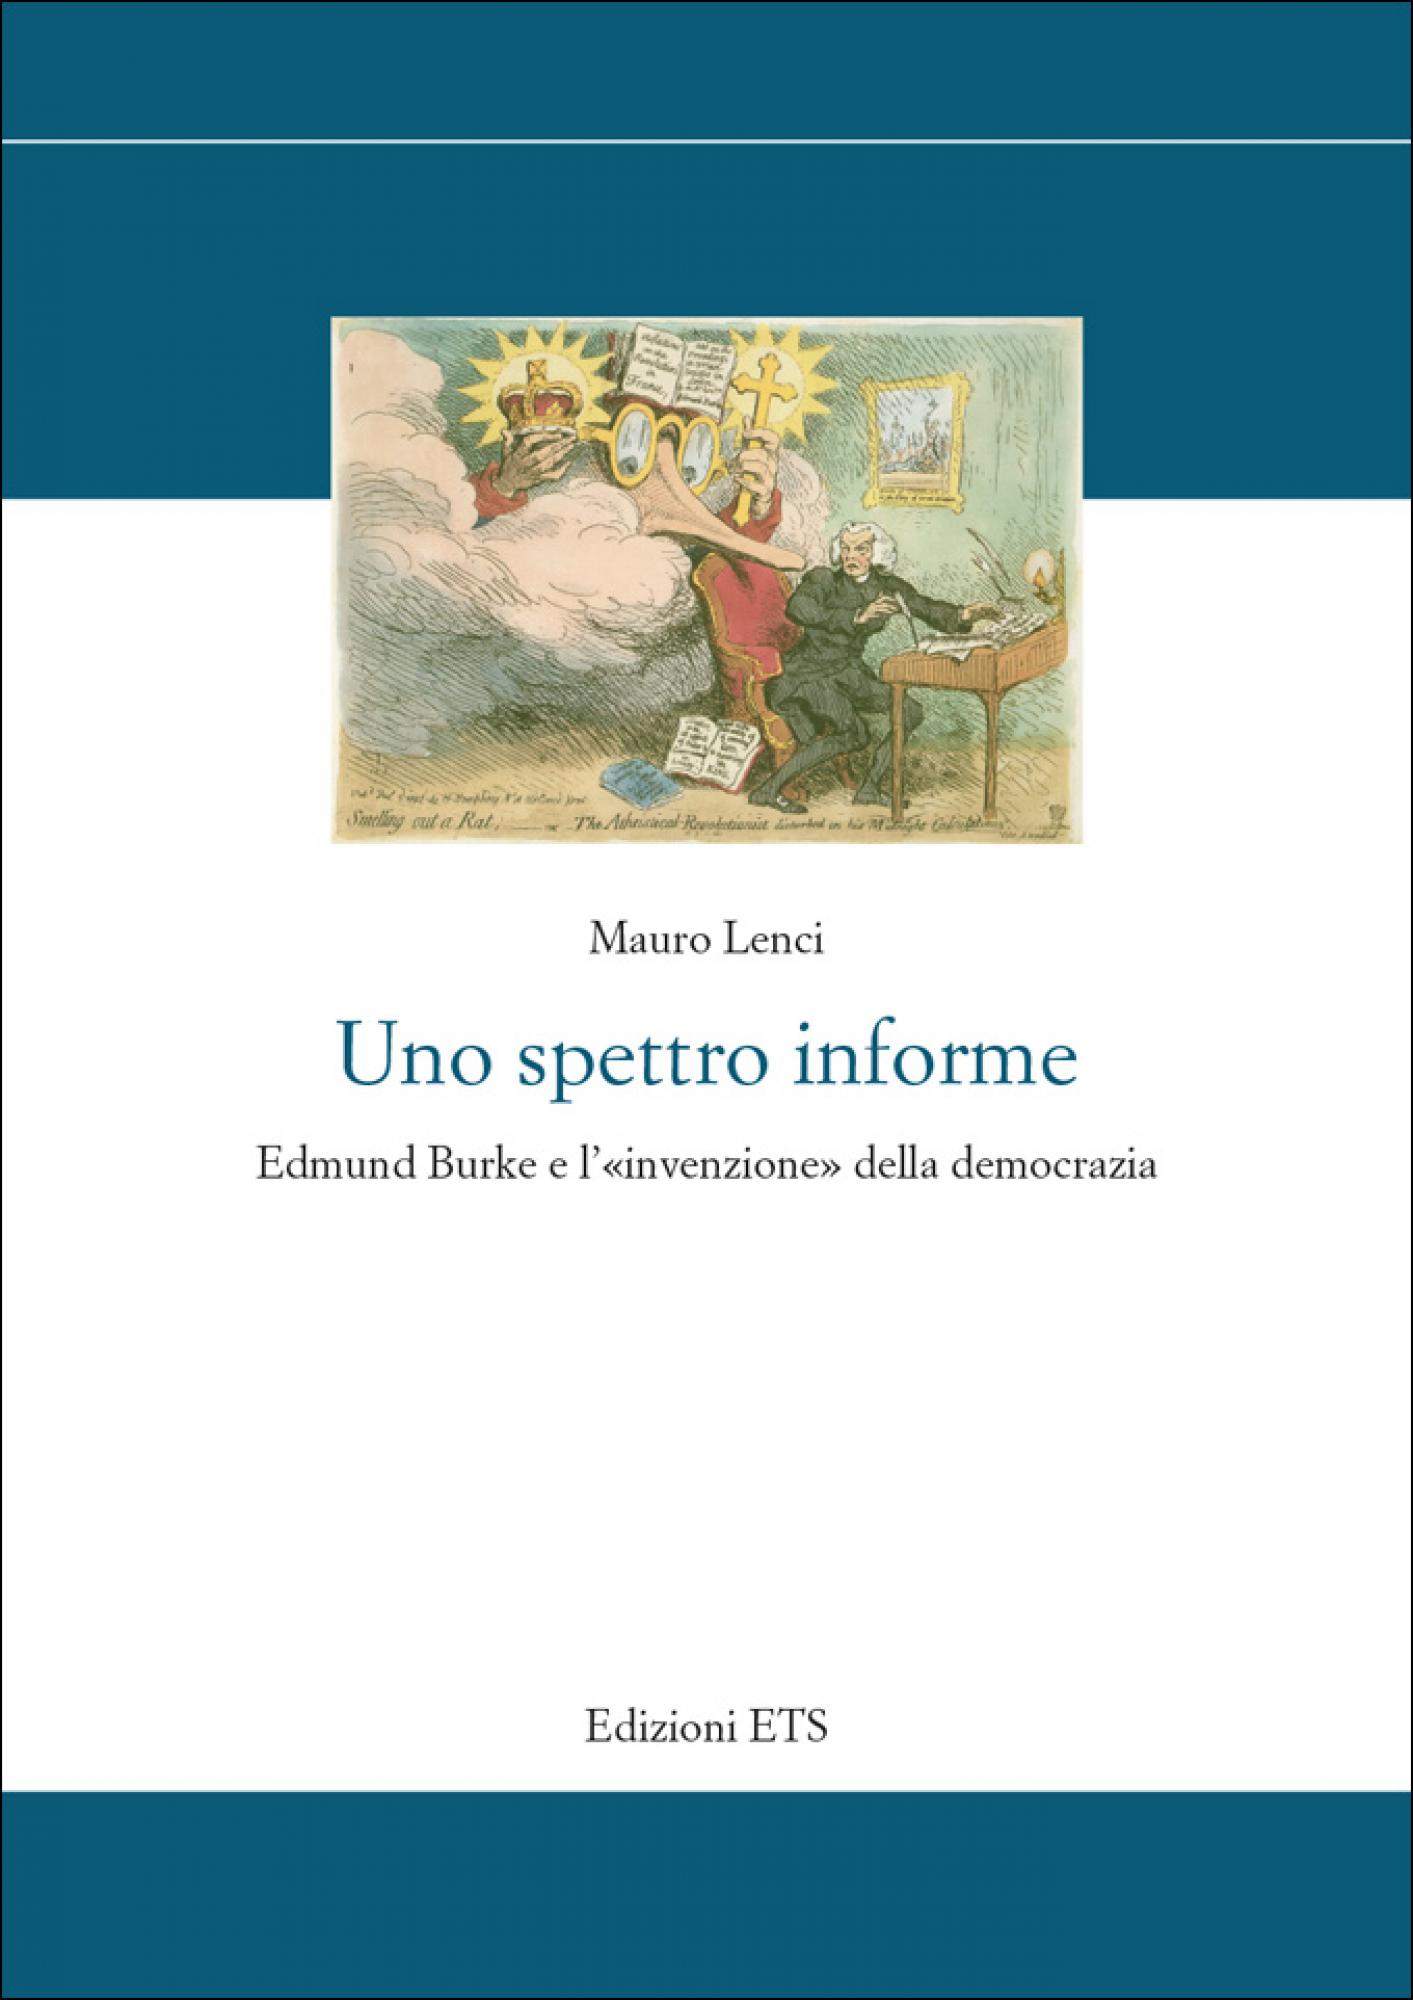 Uno spettro informe.Edmund Burke e l’«invenzione» della democrazia